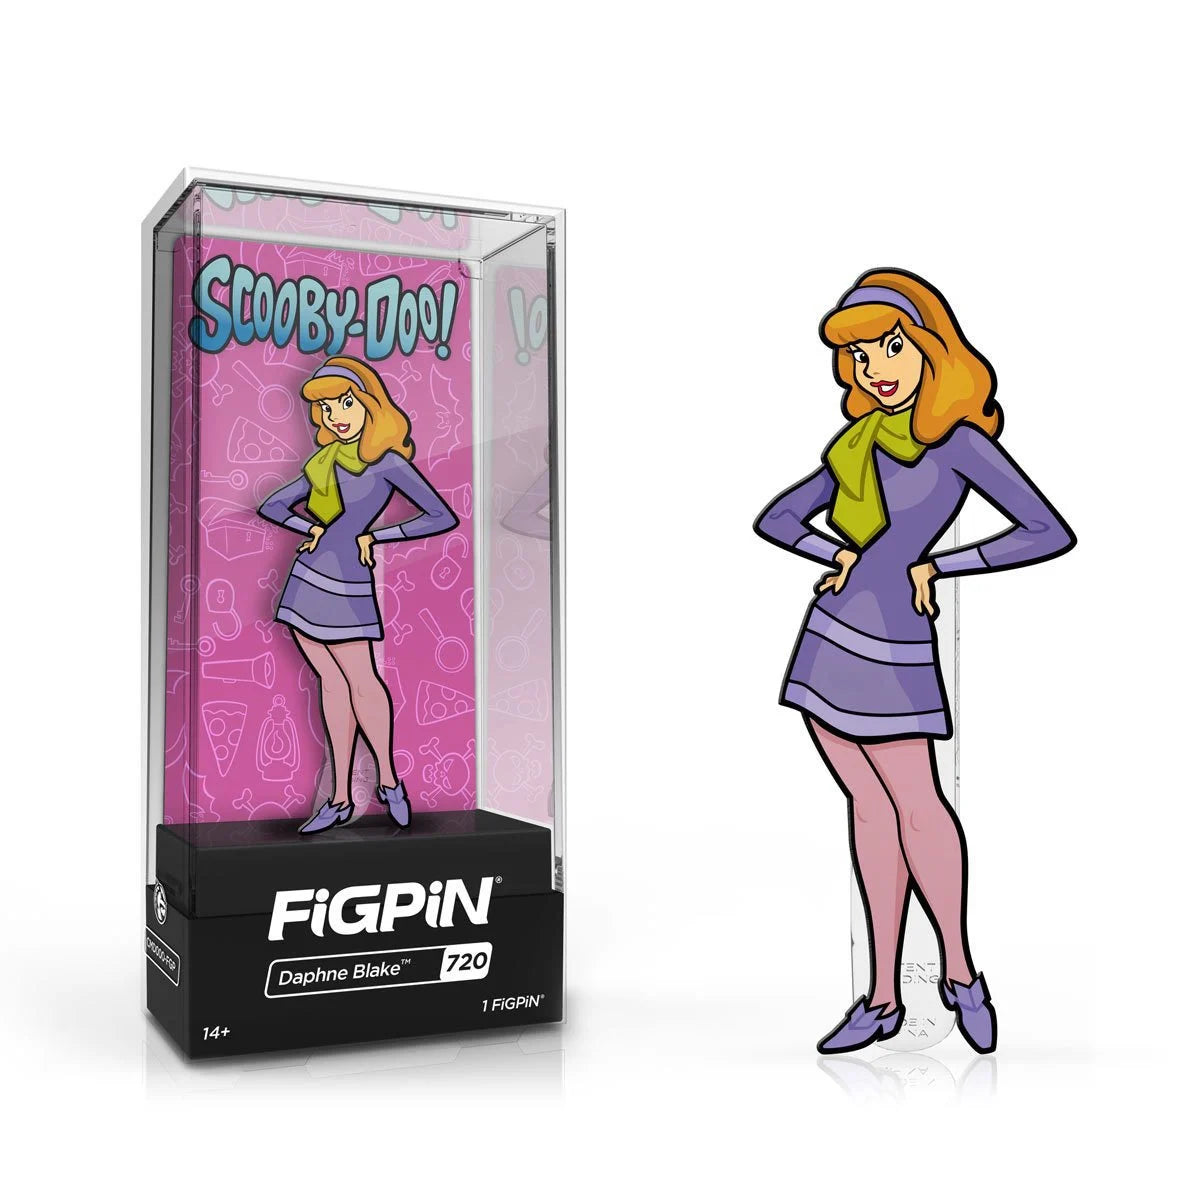 Scooby-Doo Daphne Blake FiGPiN Classic 3-Inch Enamel Pin